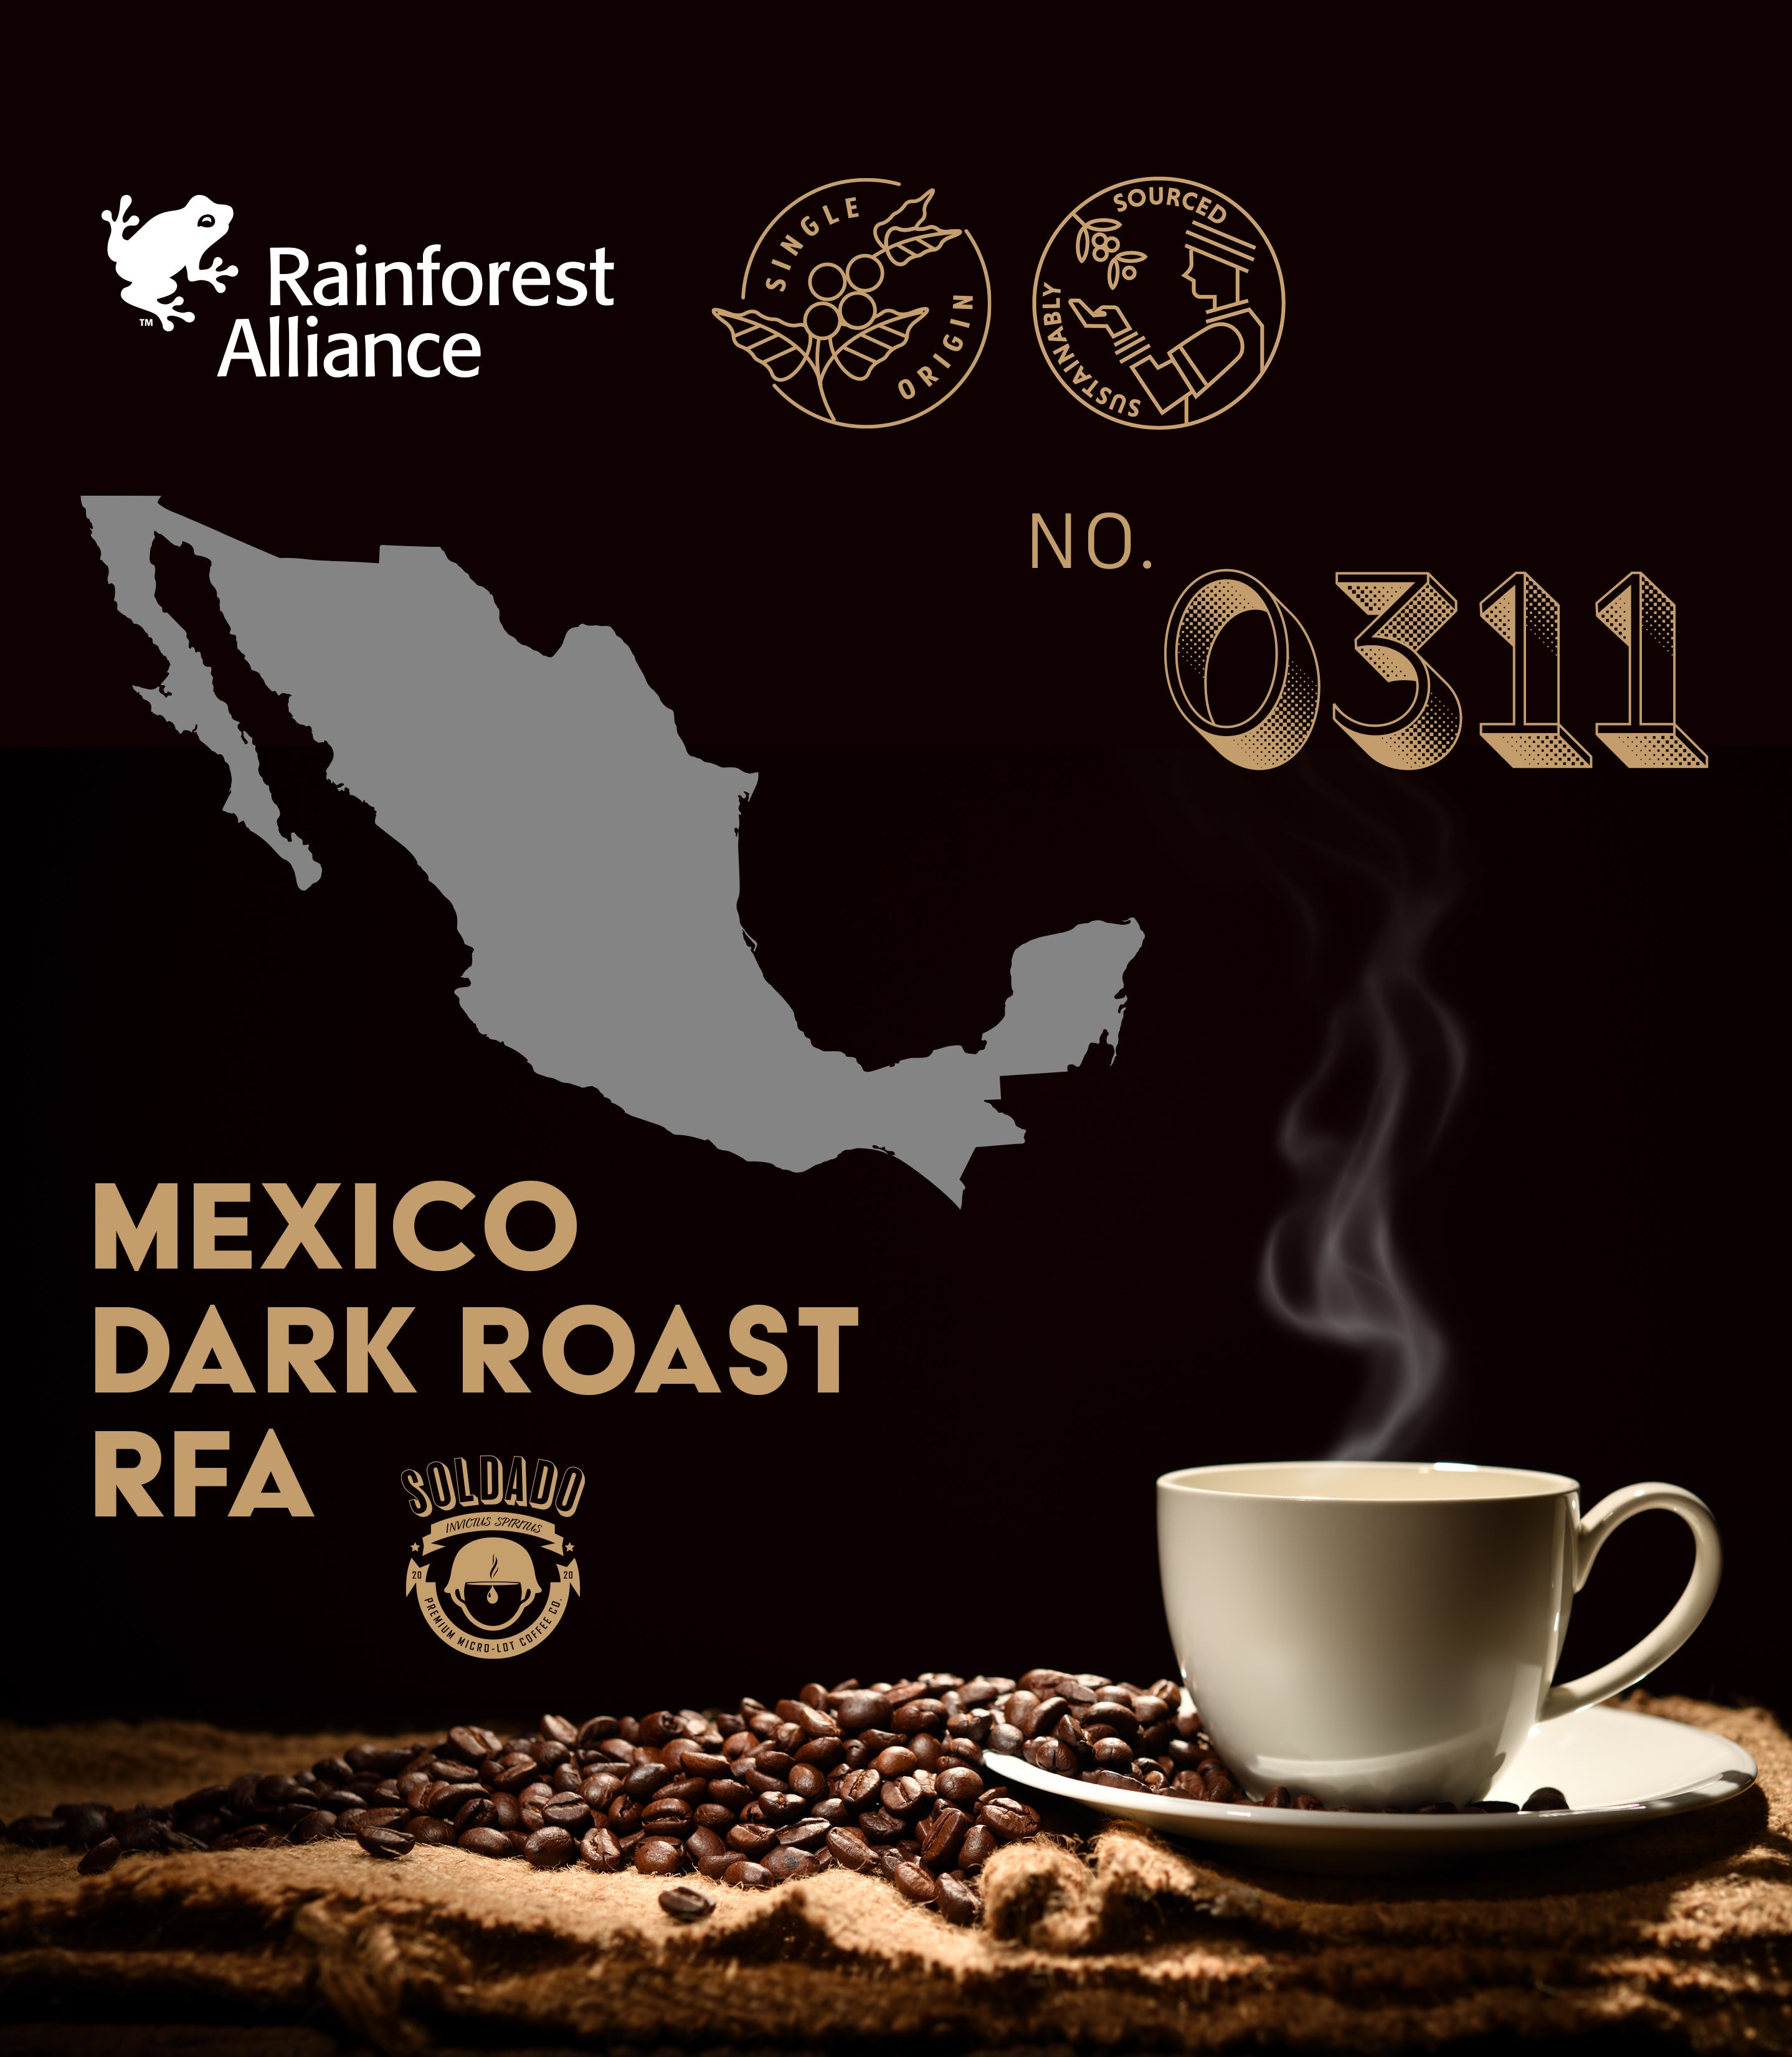 Mexico Dark Roast RFA No. 0311